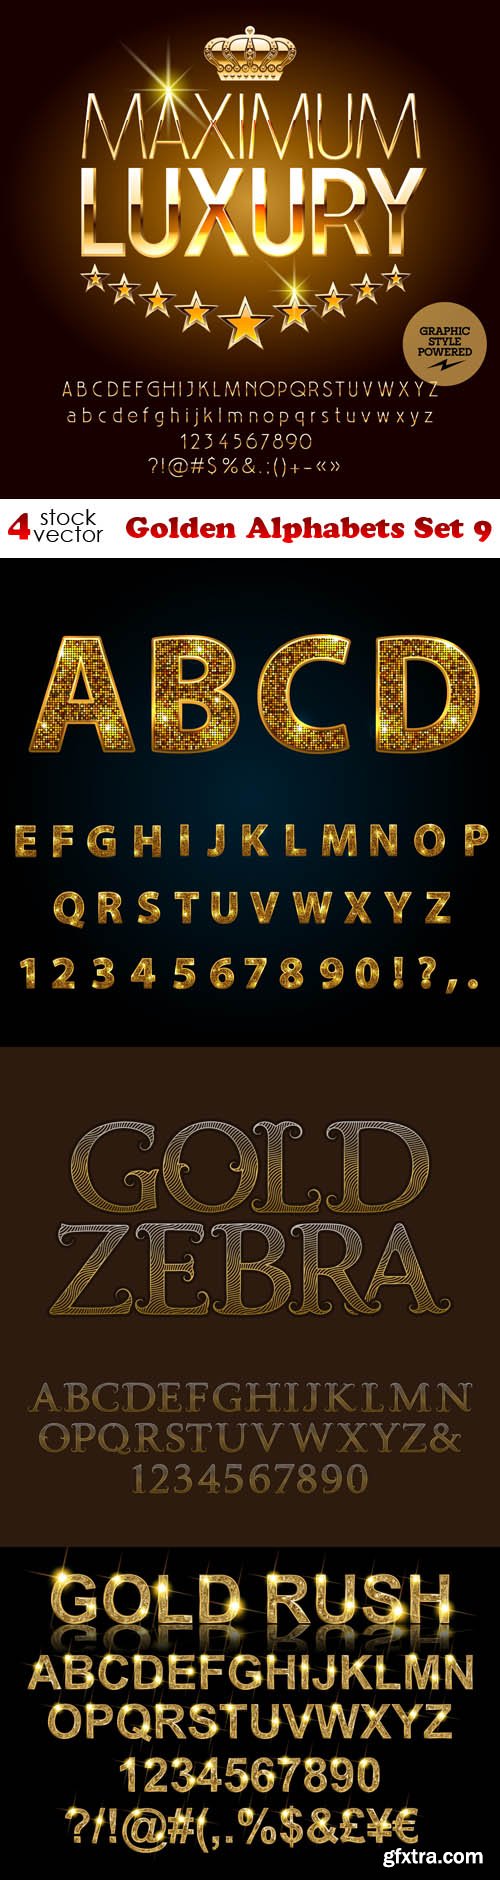 Vectors - Golden Alphabets Set 9